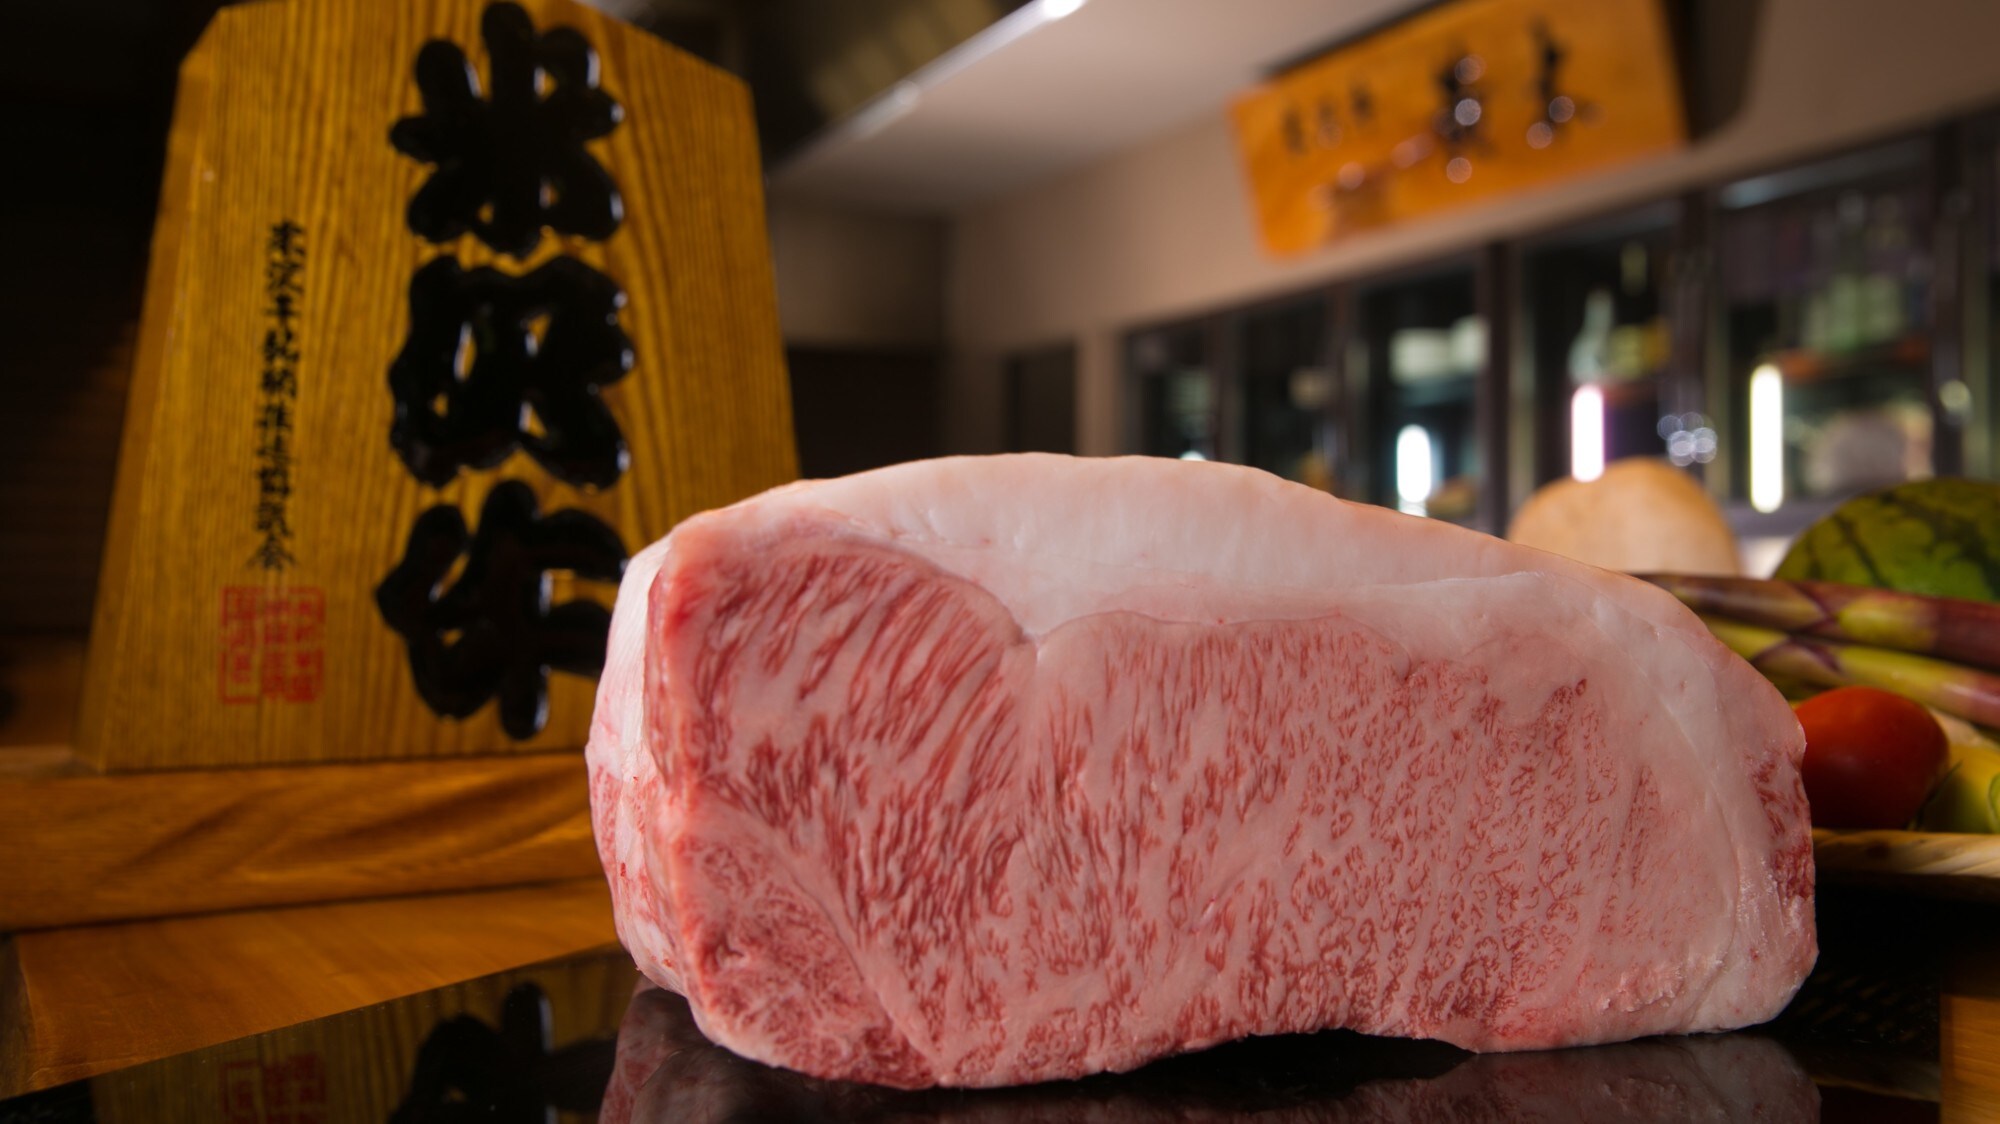 Contoh daging sapi Yonezawa / Kami menyiapkan daging berkualitas tinggi yang unik untuk bangunan saudara dari toko daging yang sudah lama berdiri